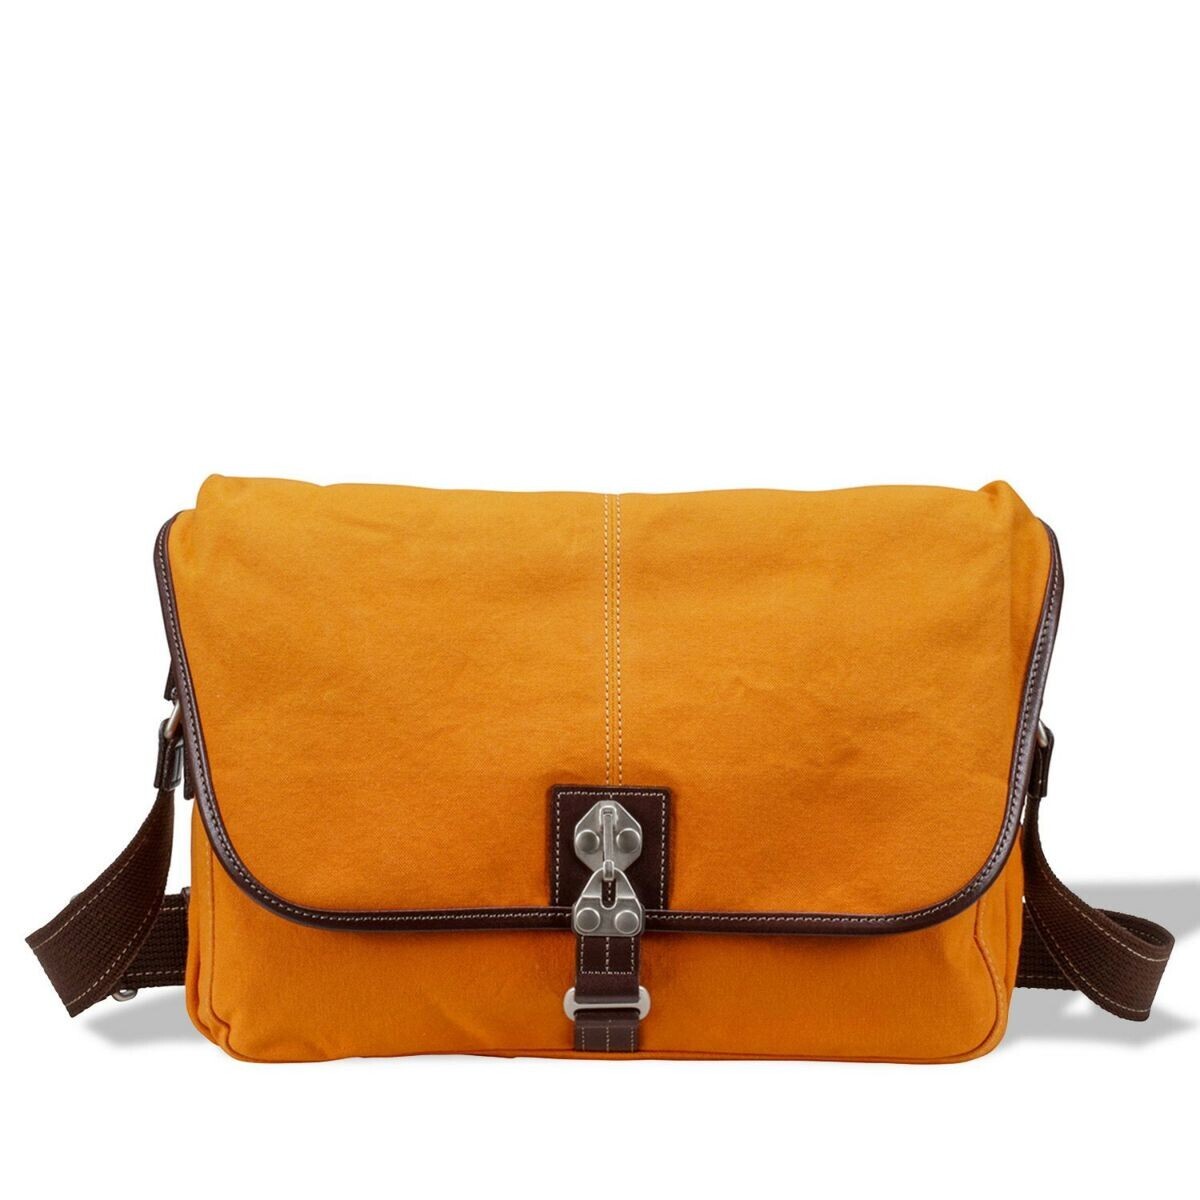 豊岡鞄「軽素材の鞄特集」　爽やかに使いこなす、軽量で涼しげな素材のバッグが大集合。